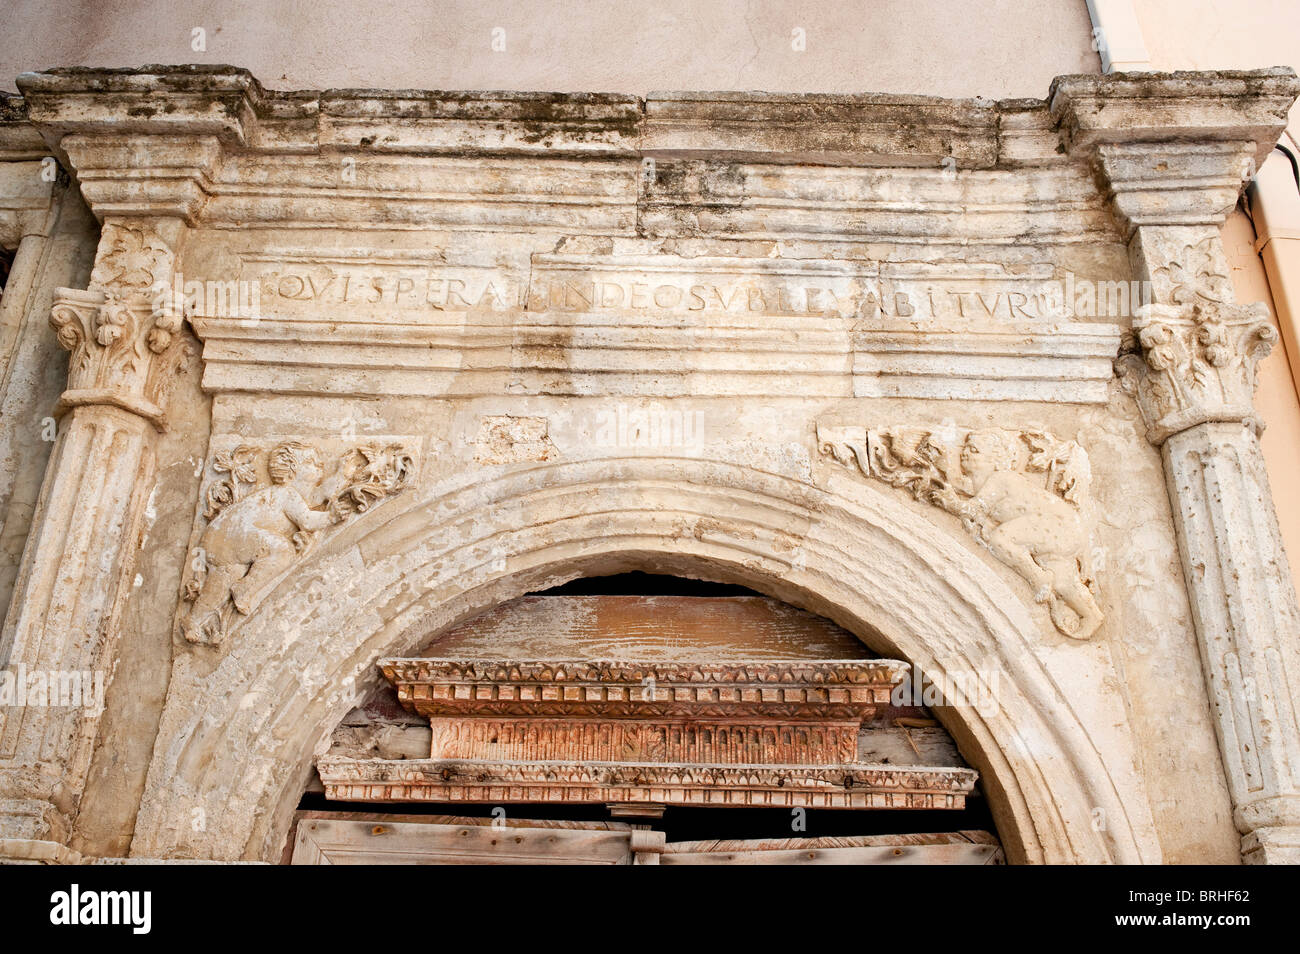 La clásica arquitectura arqueada entrada tallada en piedra caliza Foto de stock